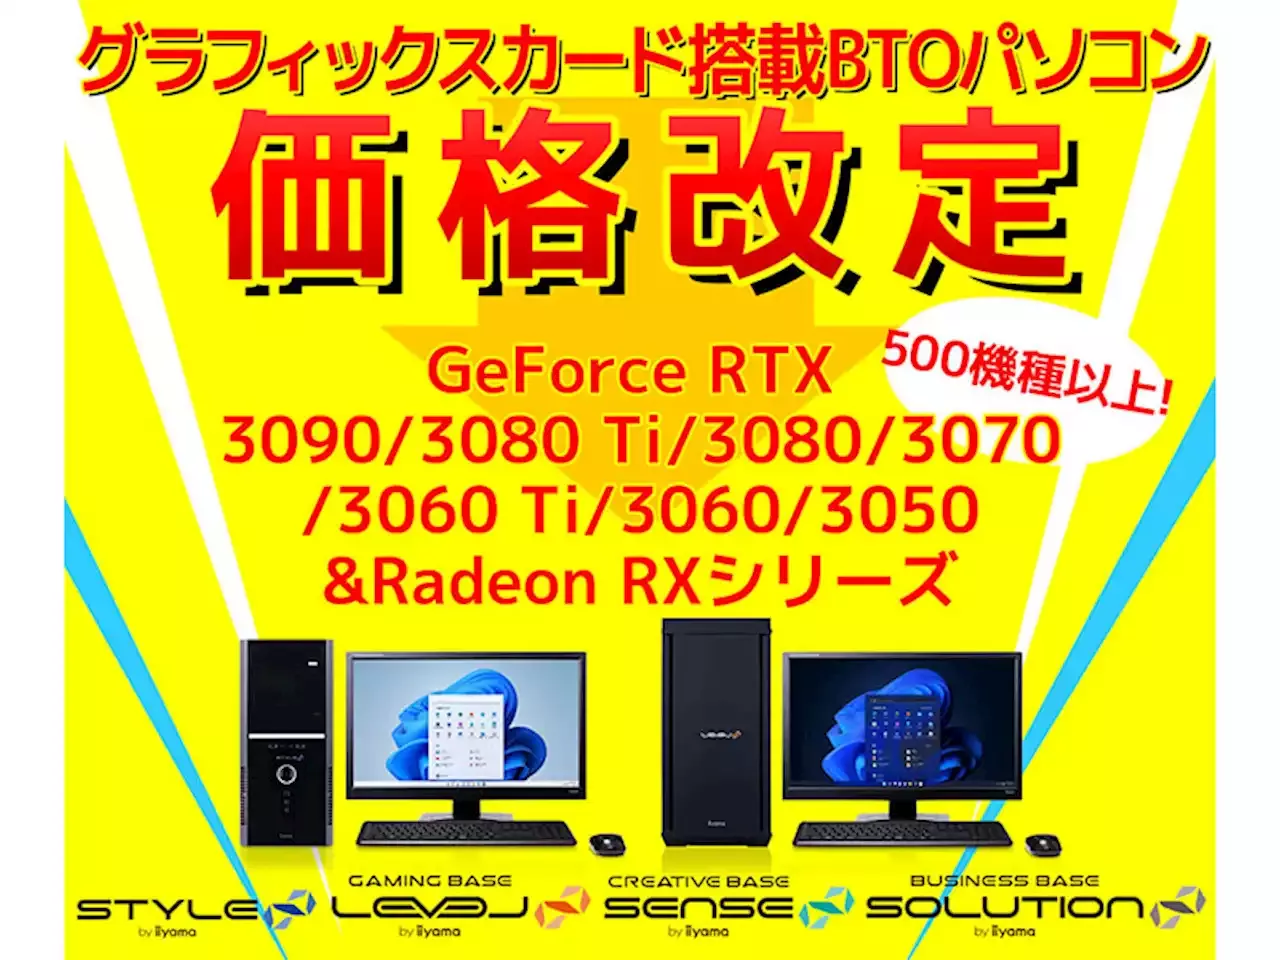 【ニュース・フラッシュ】パソコン工房、GeForce/Radeon搭載BTO PCを価格改定